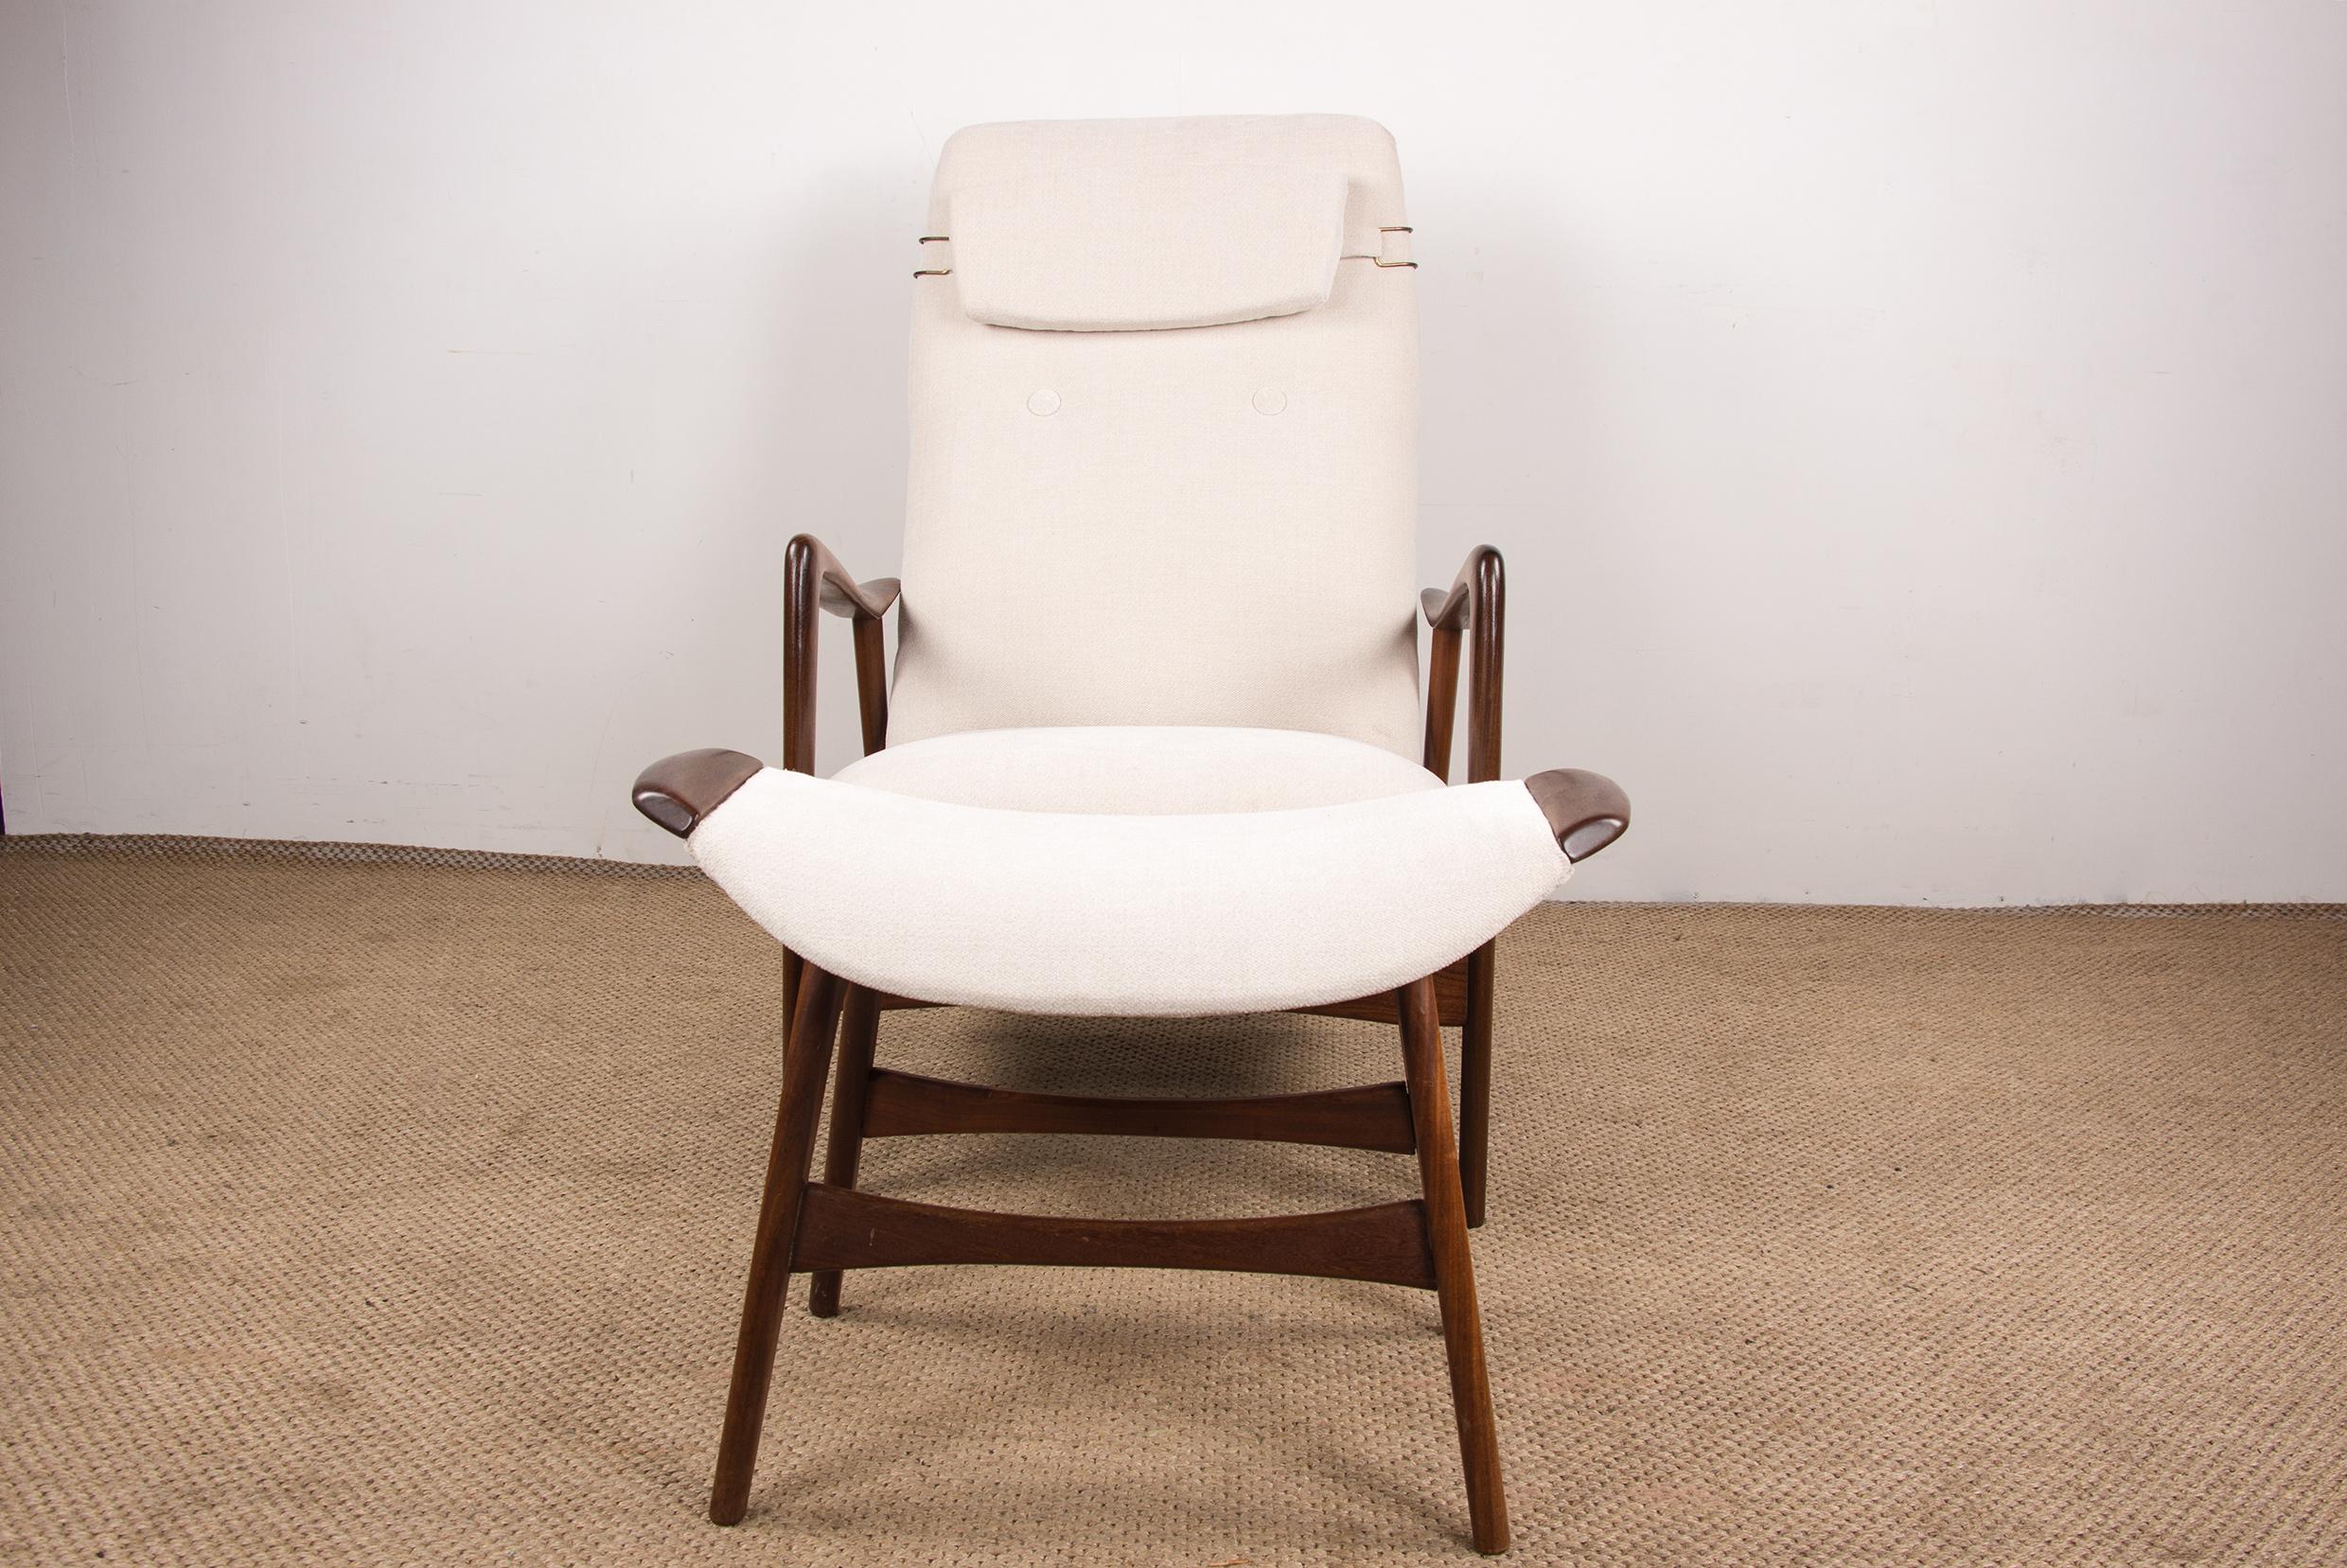 Außergewöhnliche Sessel, jeder mit eigener Fußstütze erhältlich. Ein ausgeklügeltes Metallsystem ermöglicht das Zurücklehnen der Stühle und bietet großen Komfort mit einem leichten Schaukeleffekt. 
Jeder Sessel hat eine bewegliche Kopfstütze. Die